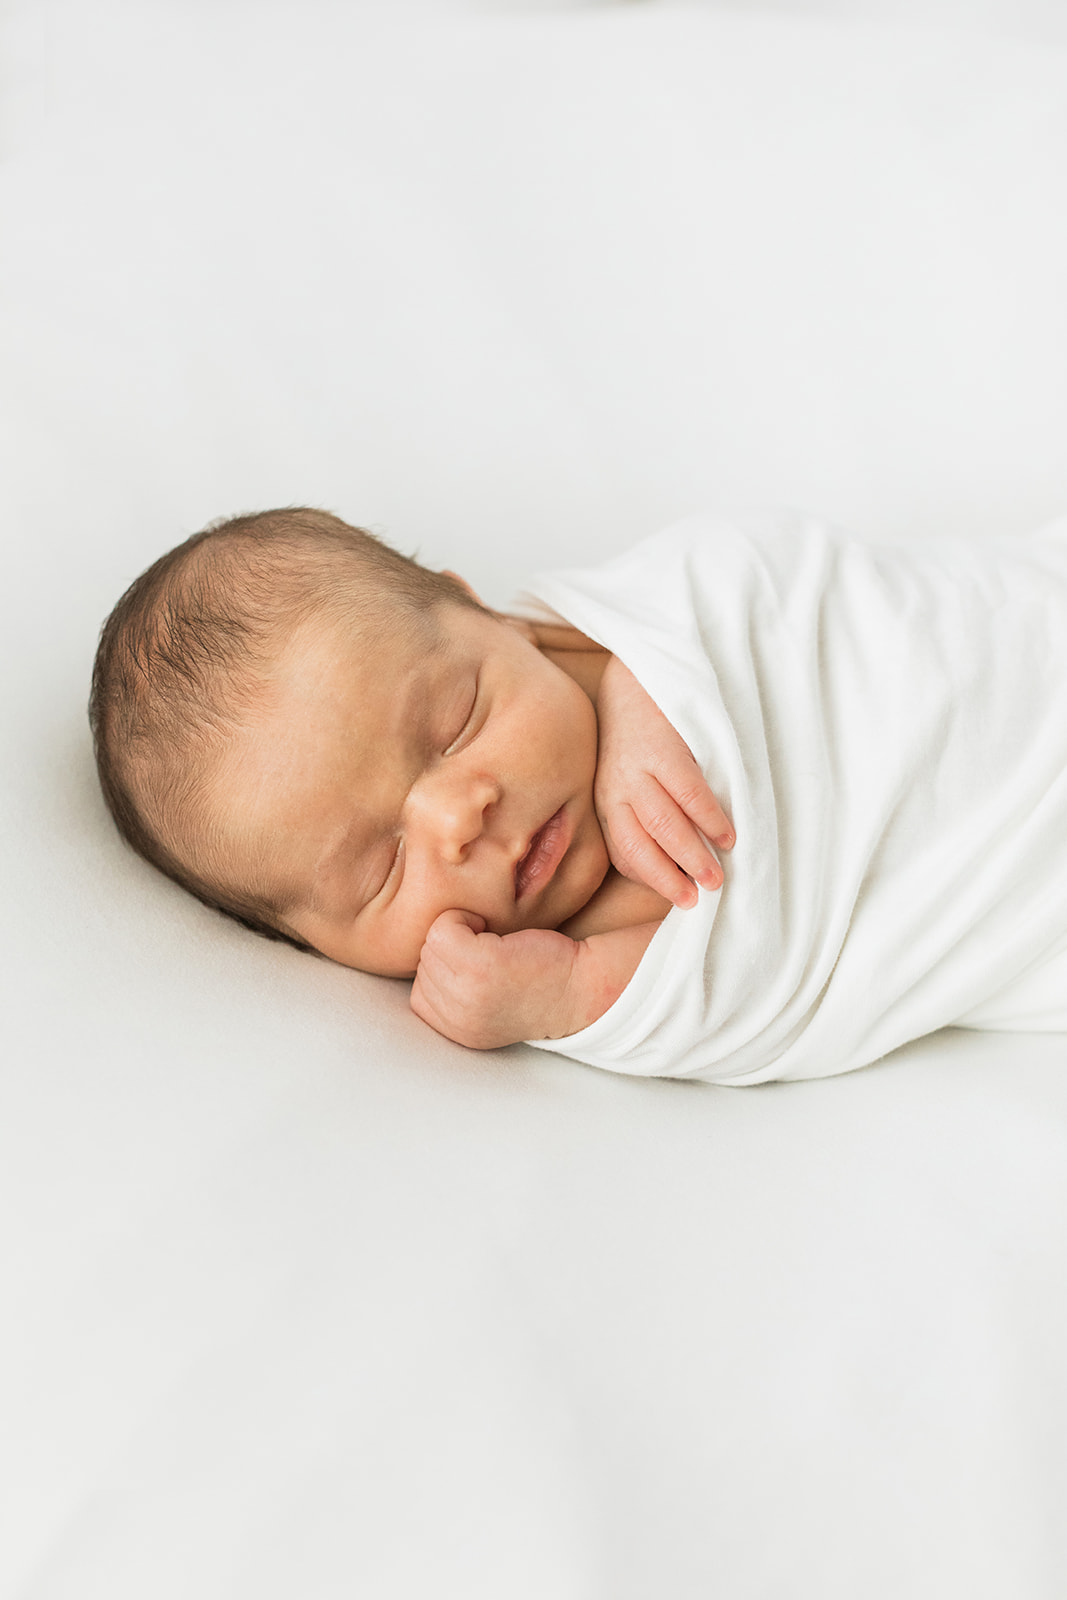 newborn baby boy photo session in nashville studio. sleepy baby boy